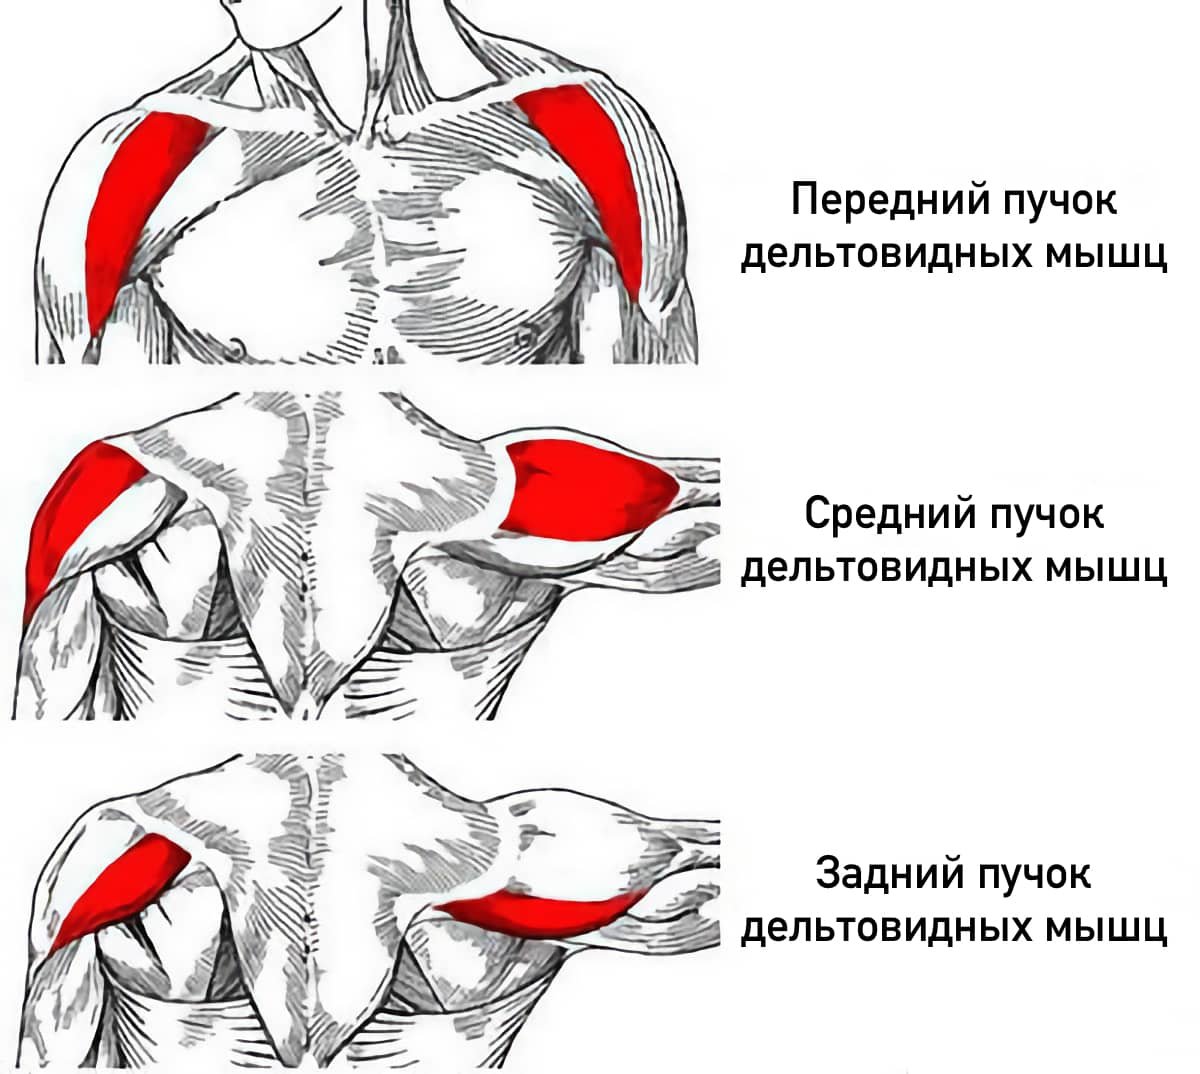 Пучок дельтовидной мышцы